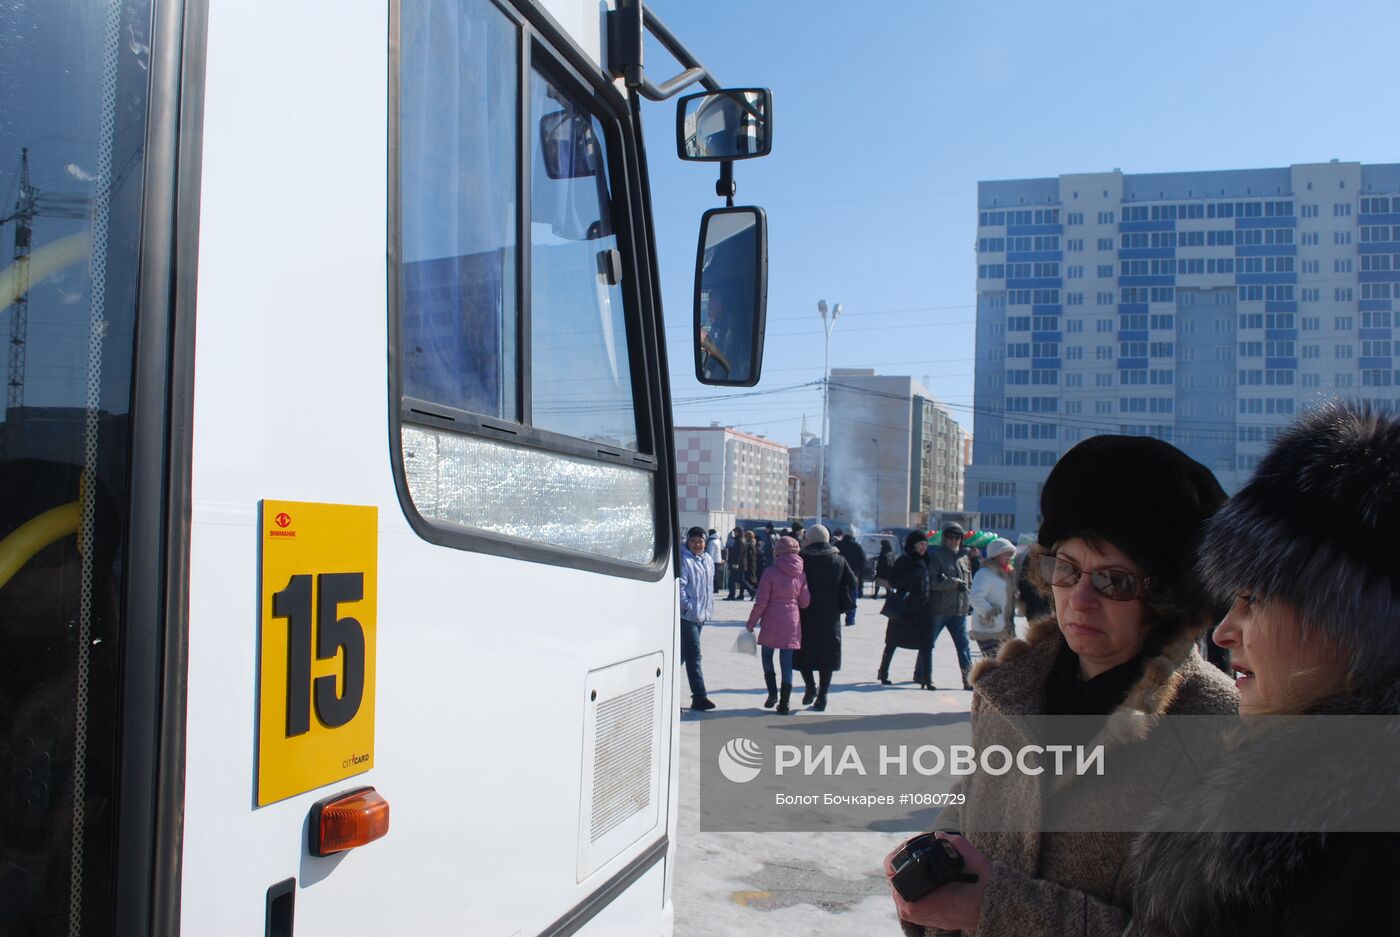 Тактильные таблички для незрячих на автобусах Якутска